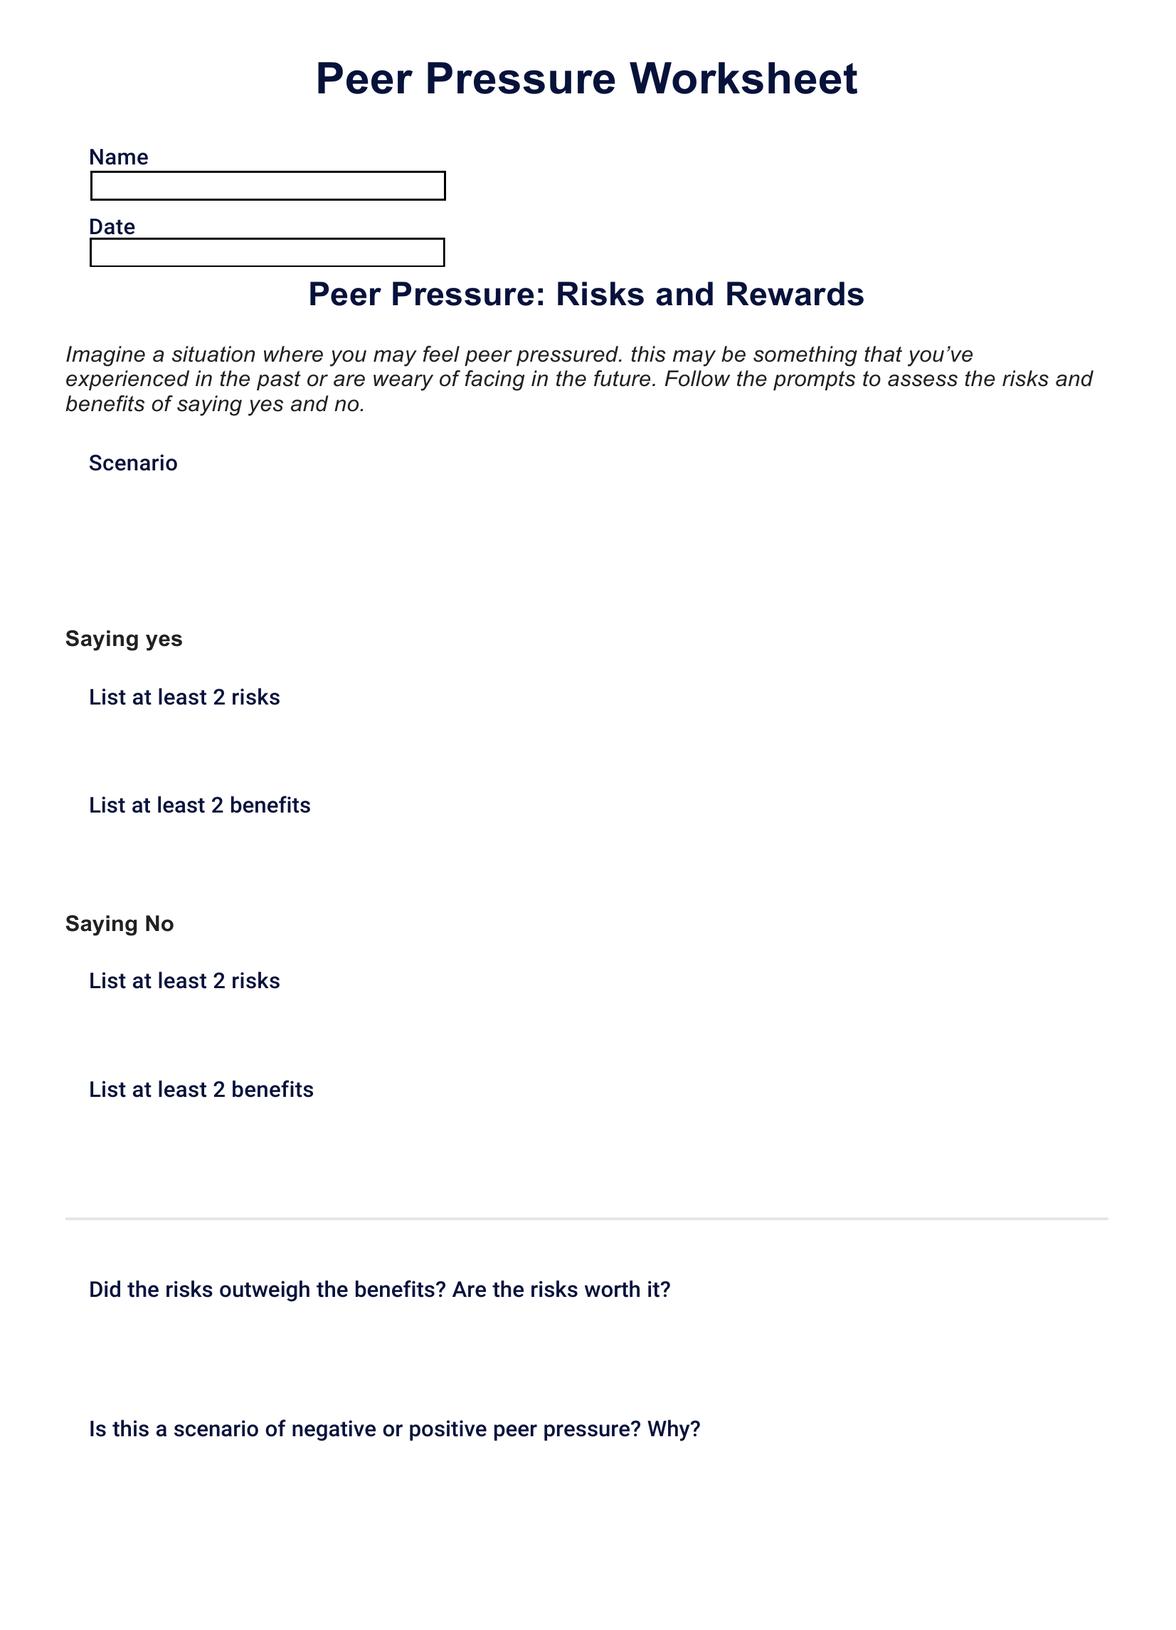 Peer Pressure Worksheet PDF Example